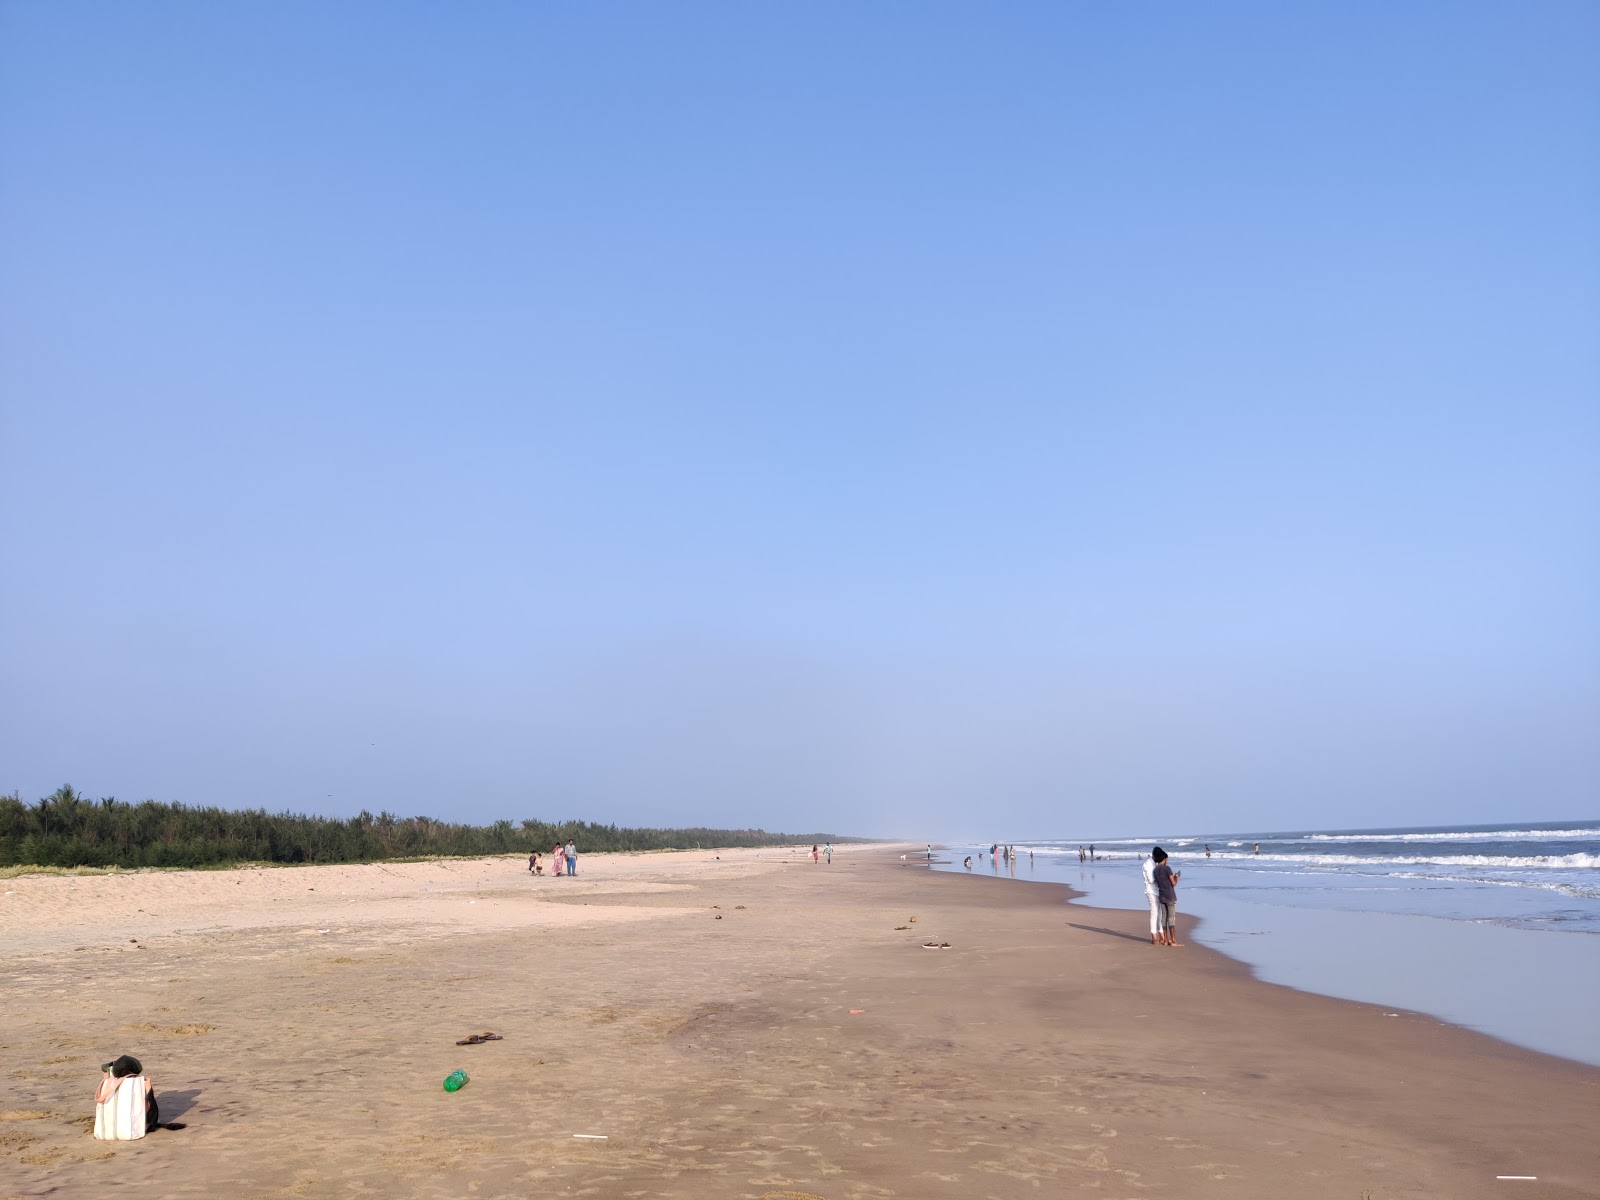 Kesanapalli Beach'in fotoğrafı parlak ince kum yüzey ile